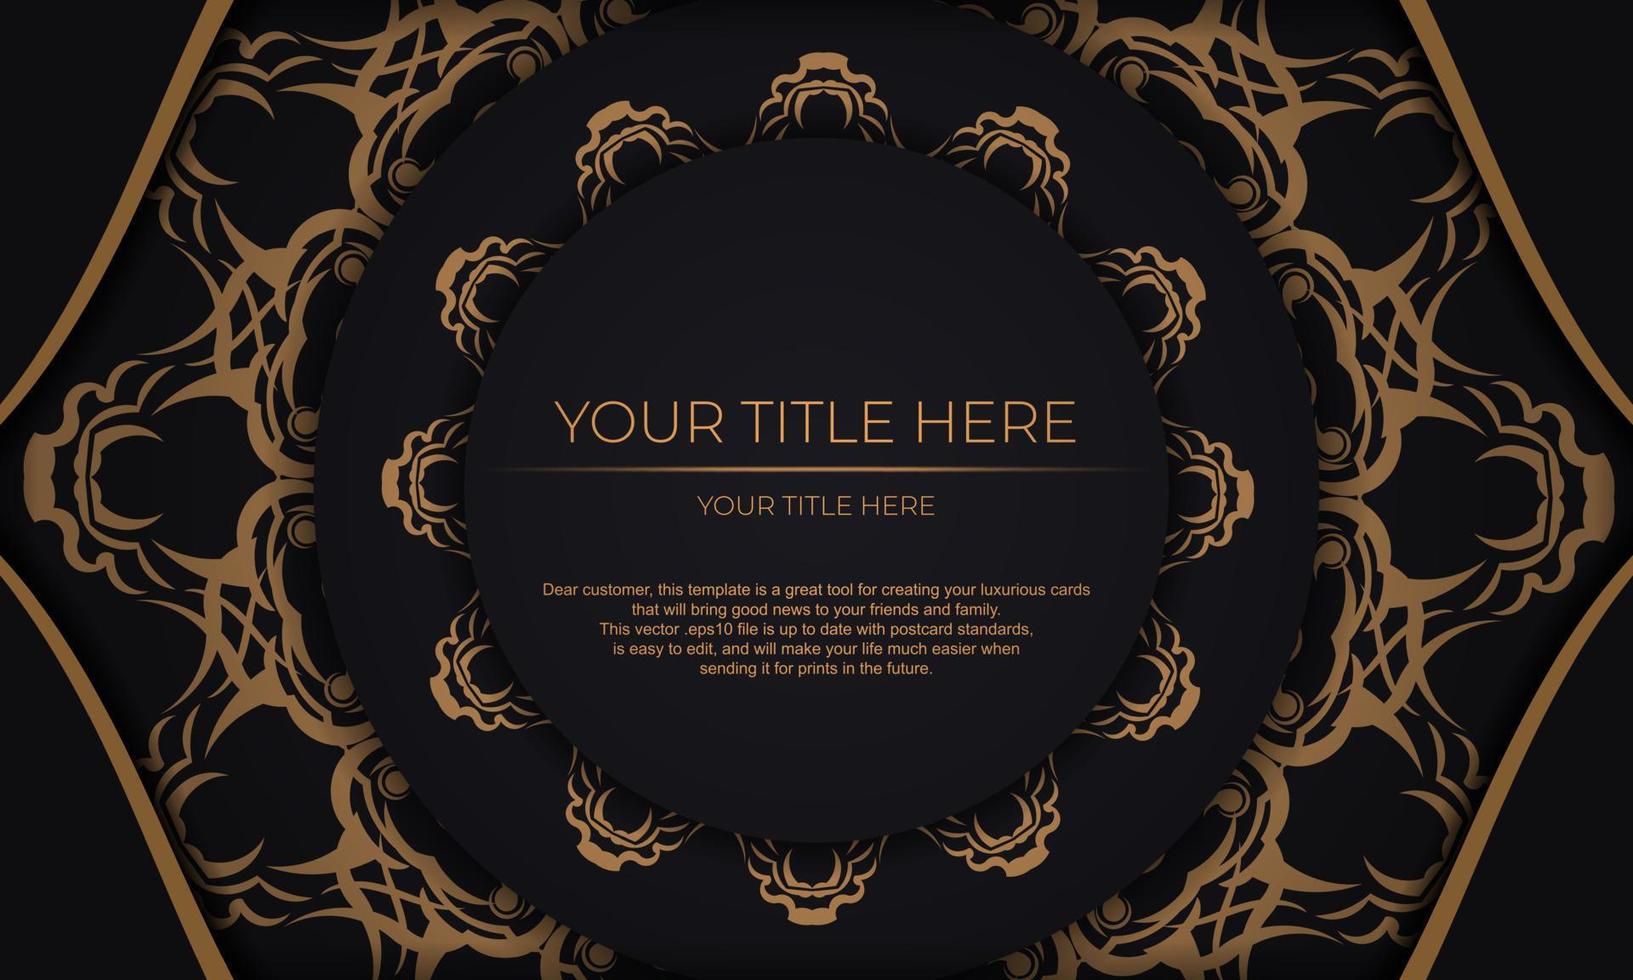 banner de vetor preto com ornamentos de ouro de luxo e lugar para o seu texto. modelo para cartão de convite para impressão de design com padrões vintage.